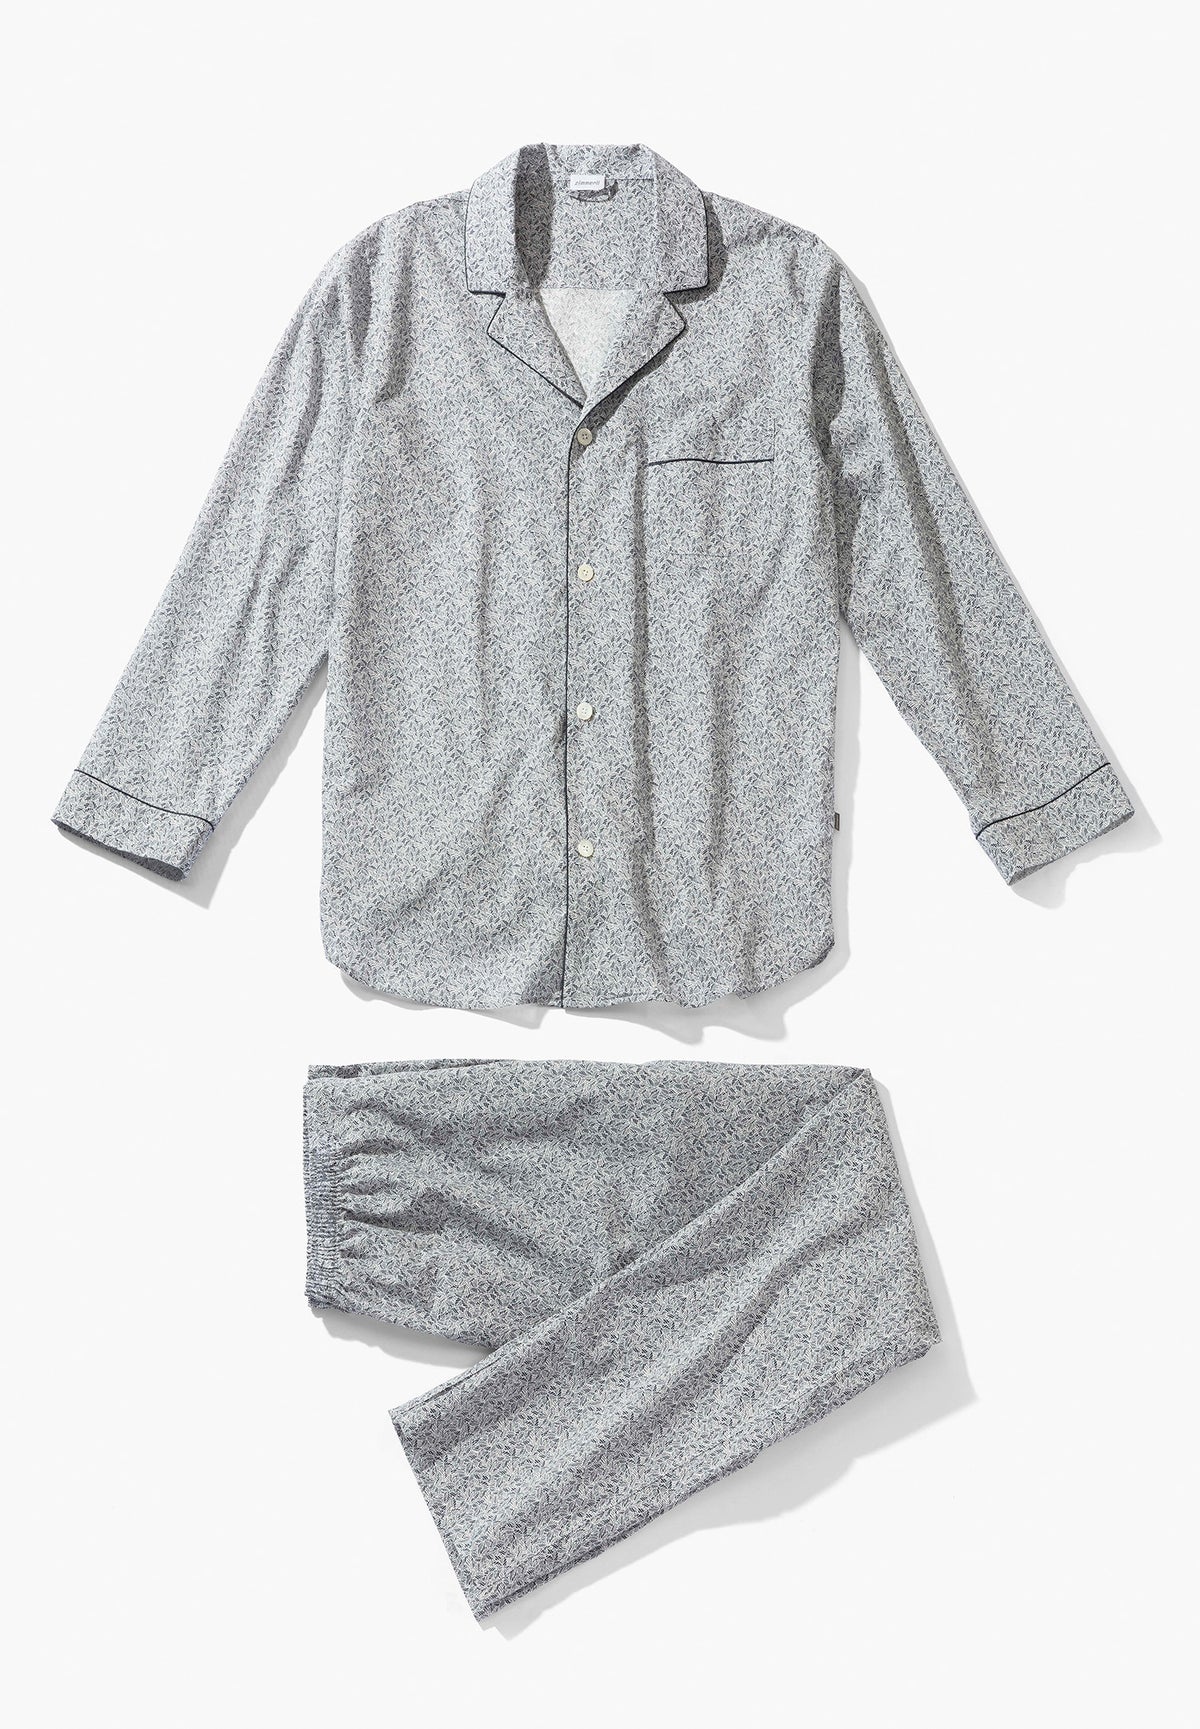 Cotton Voile Print | Pyjama longues - navy